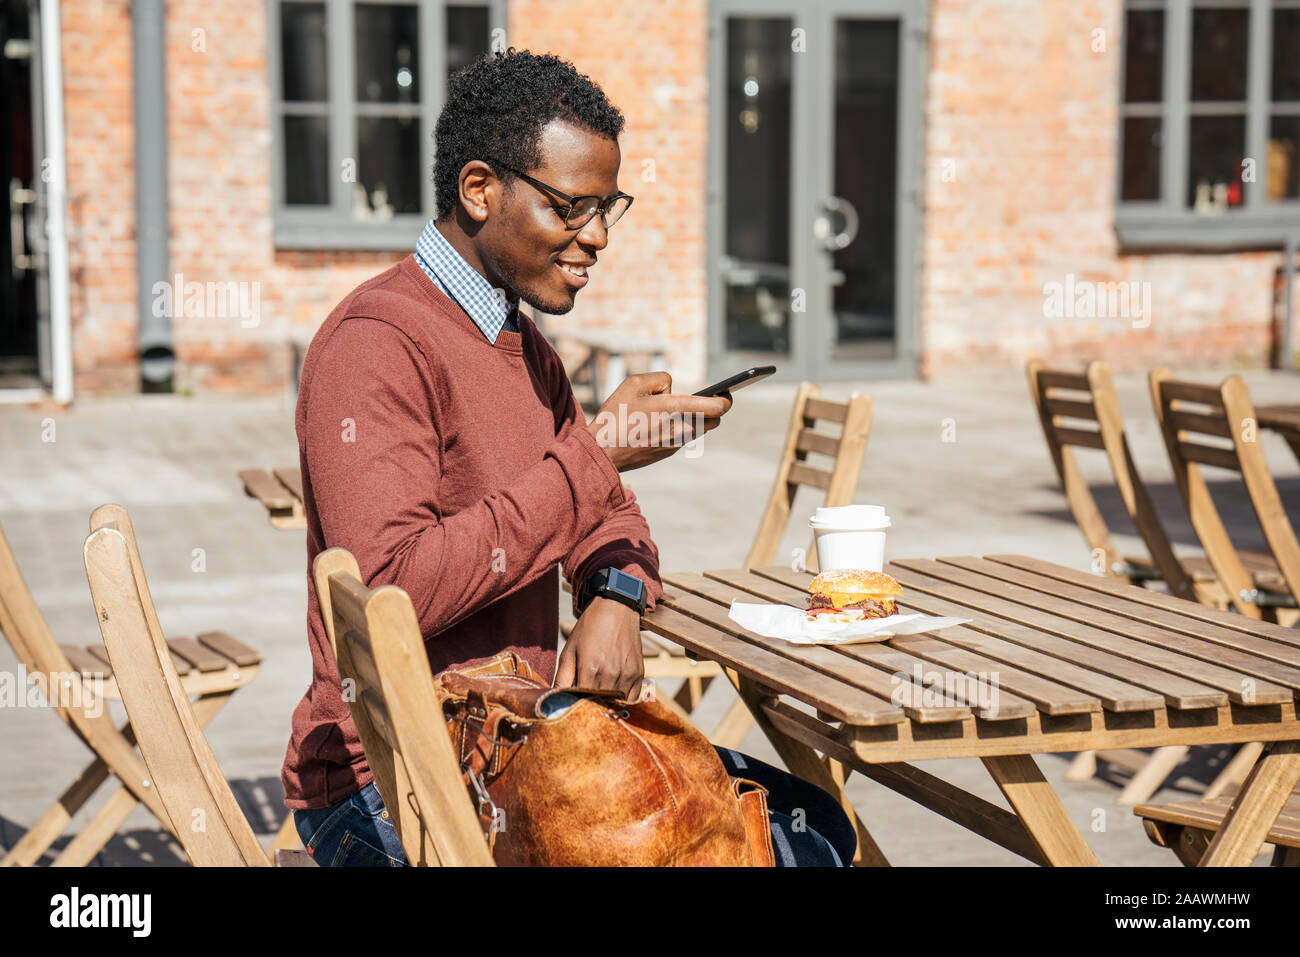 Jeune homme à prendre des photos de son cheeseburger avec son smartphone Banque D'Images